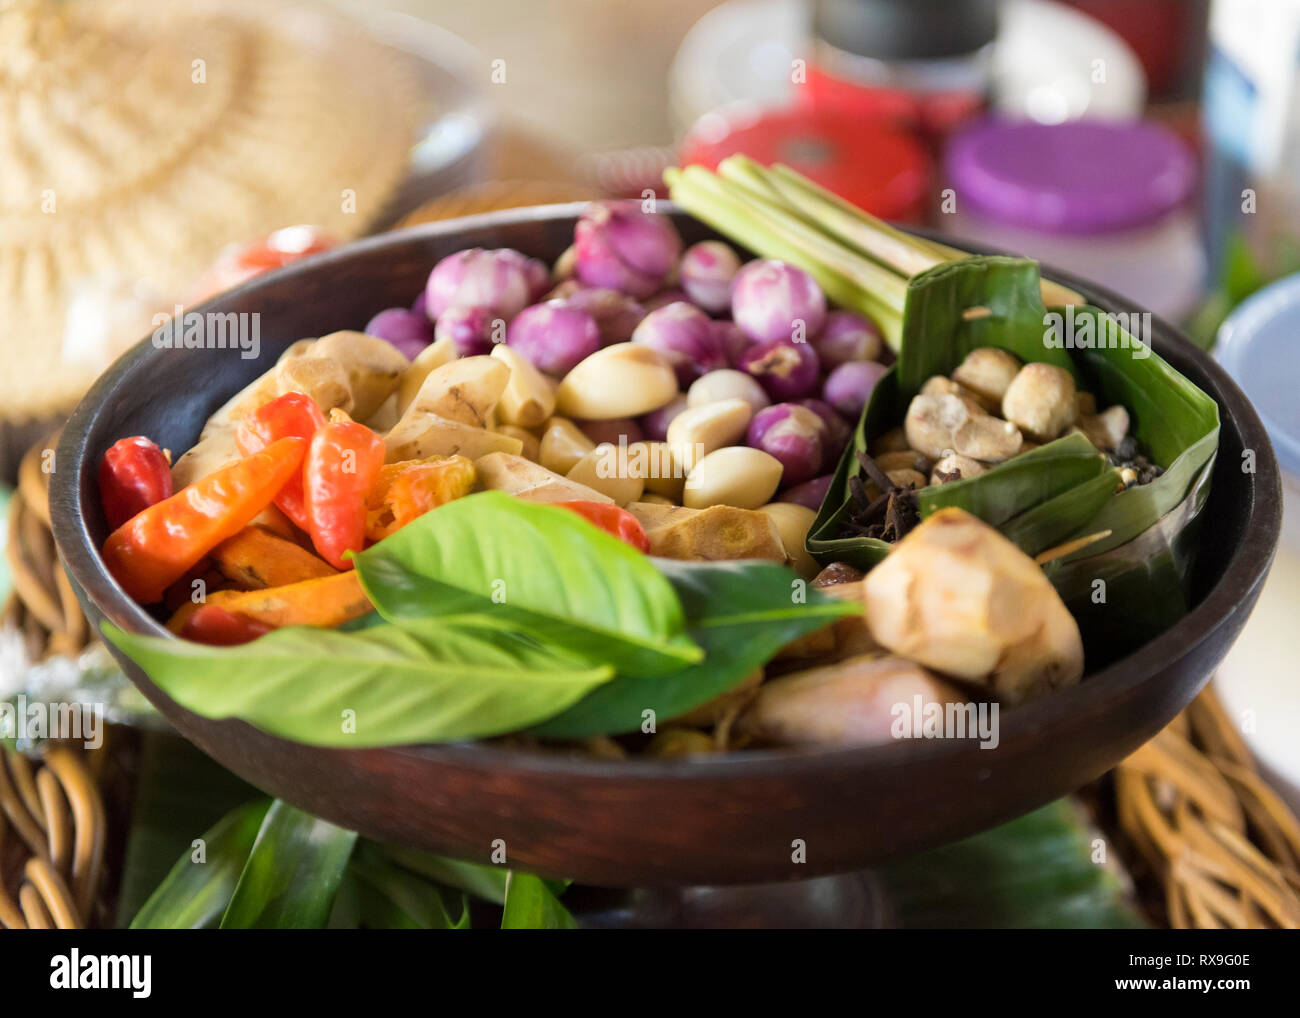 Portrait de divers ingrédients alimentaires dans un bol sur la table Banque D'Images